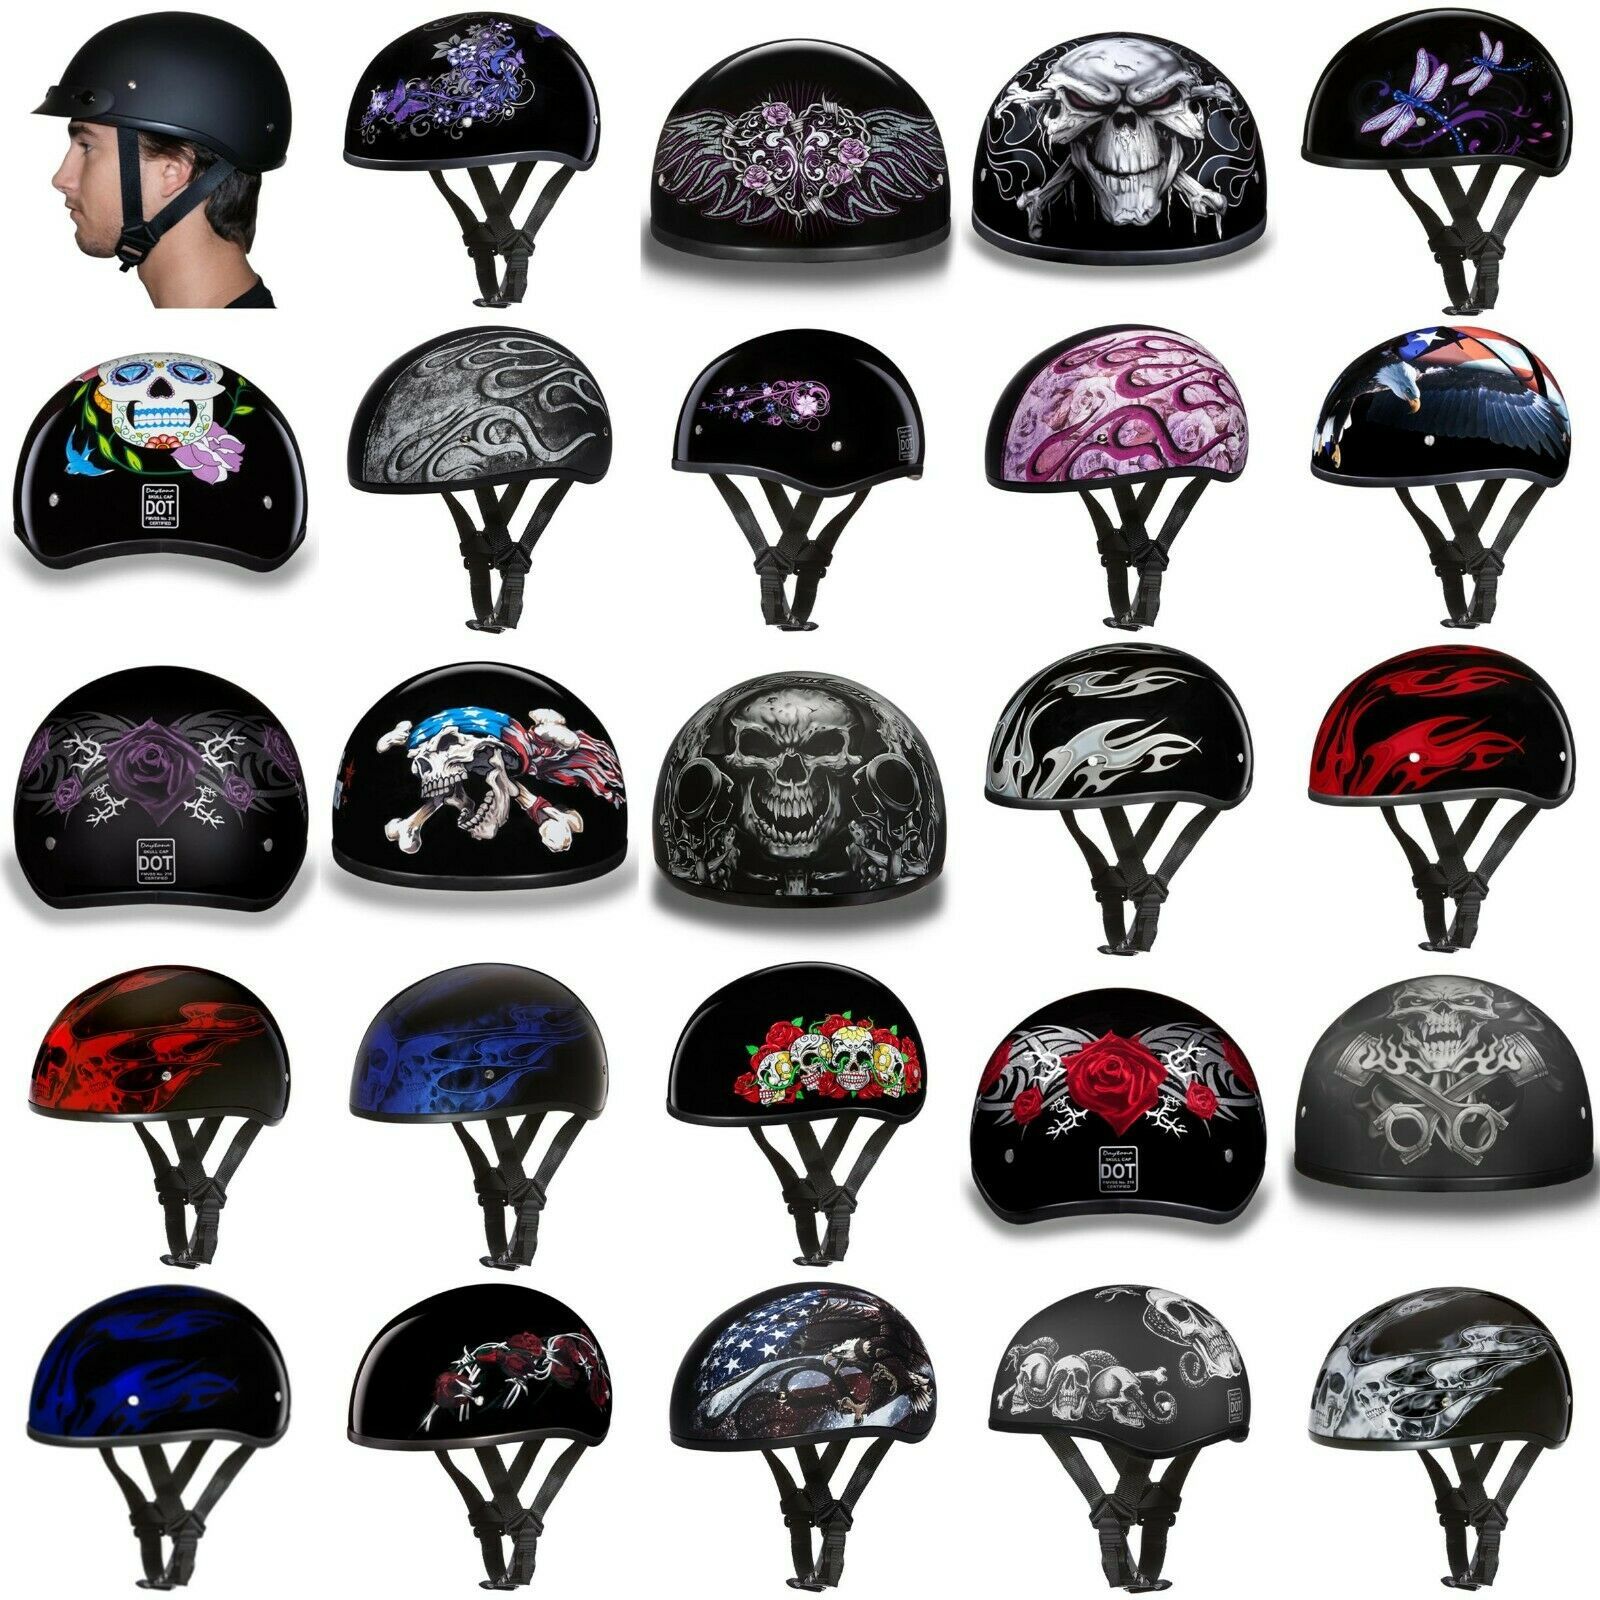 Daytona Biker Helmet D.O.T. Approved 1/2 Shell (Skull), Graphic Group, See Note - $139.00